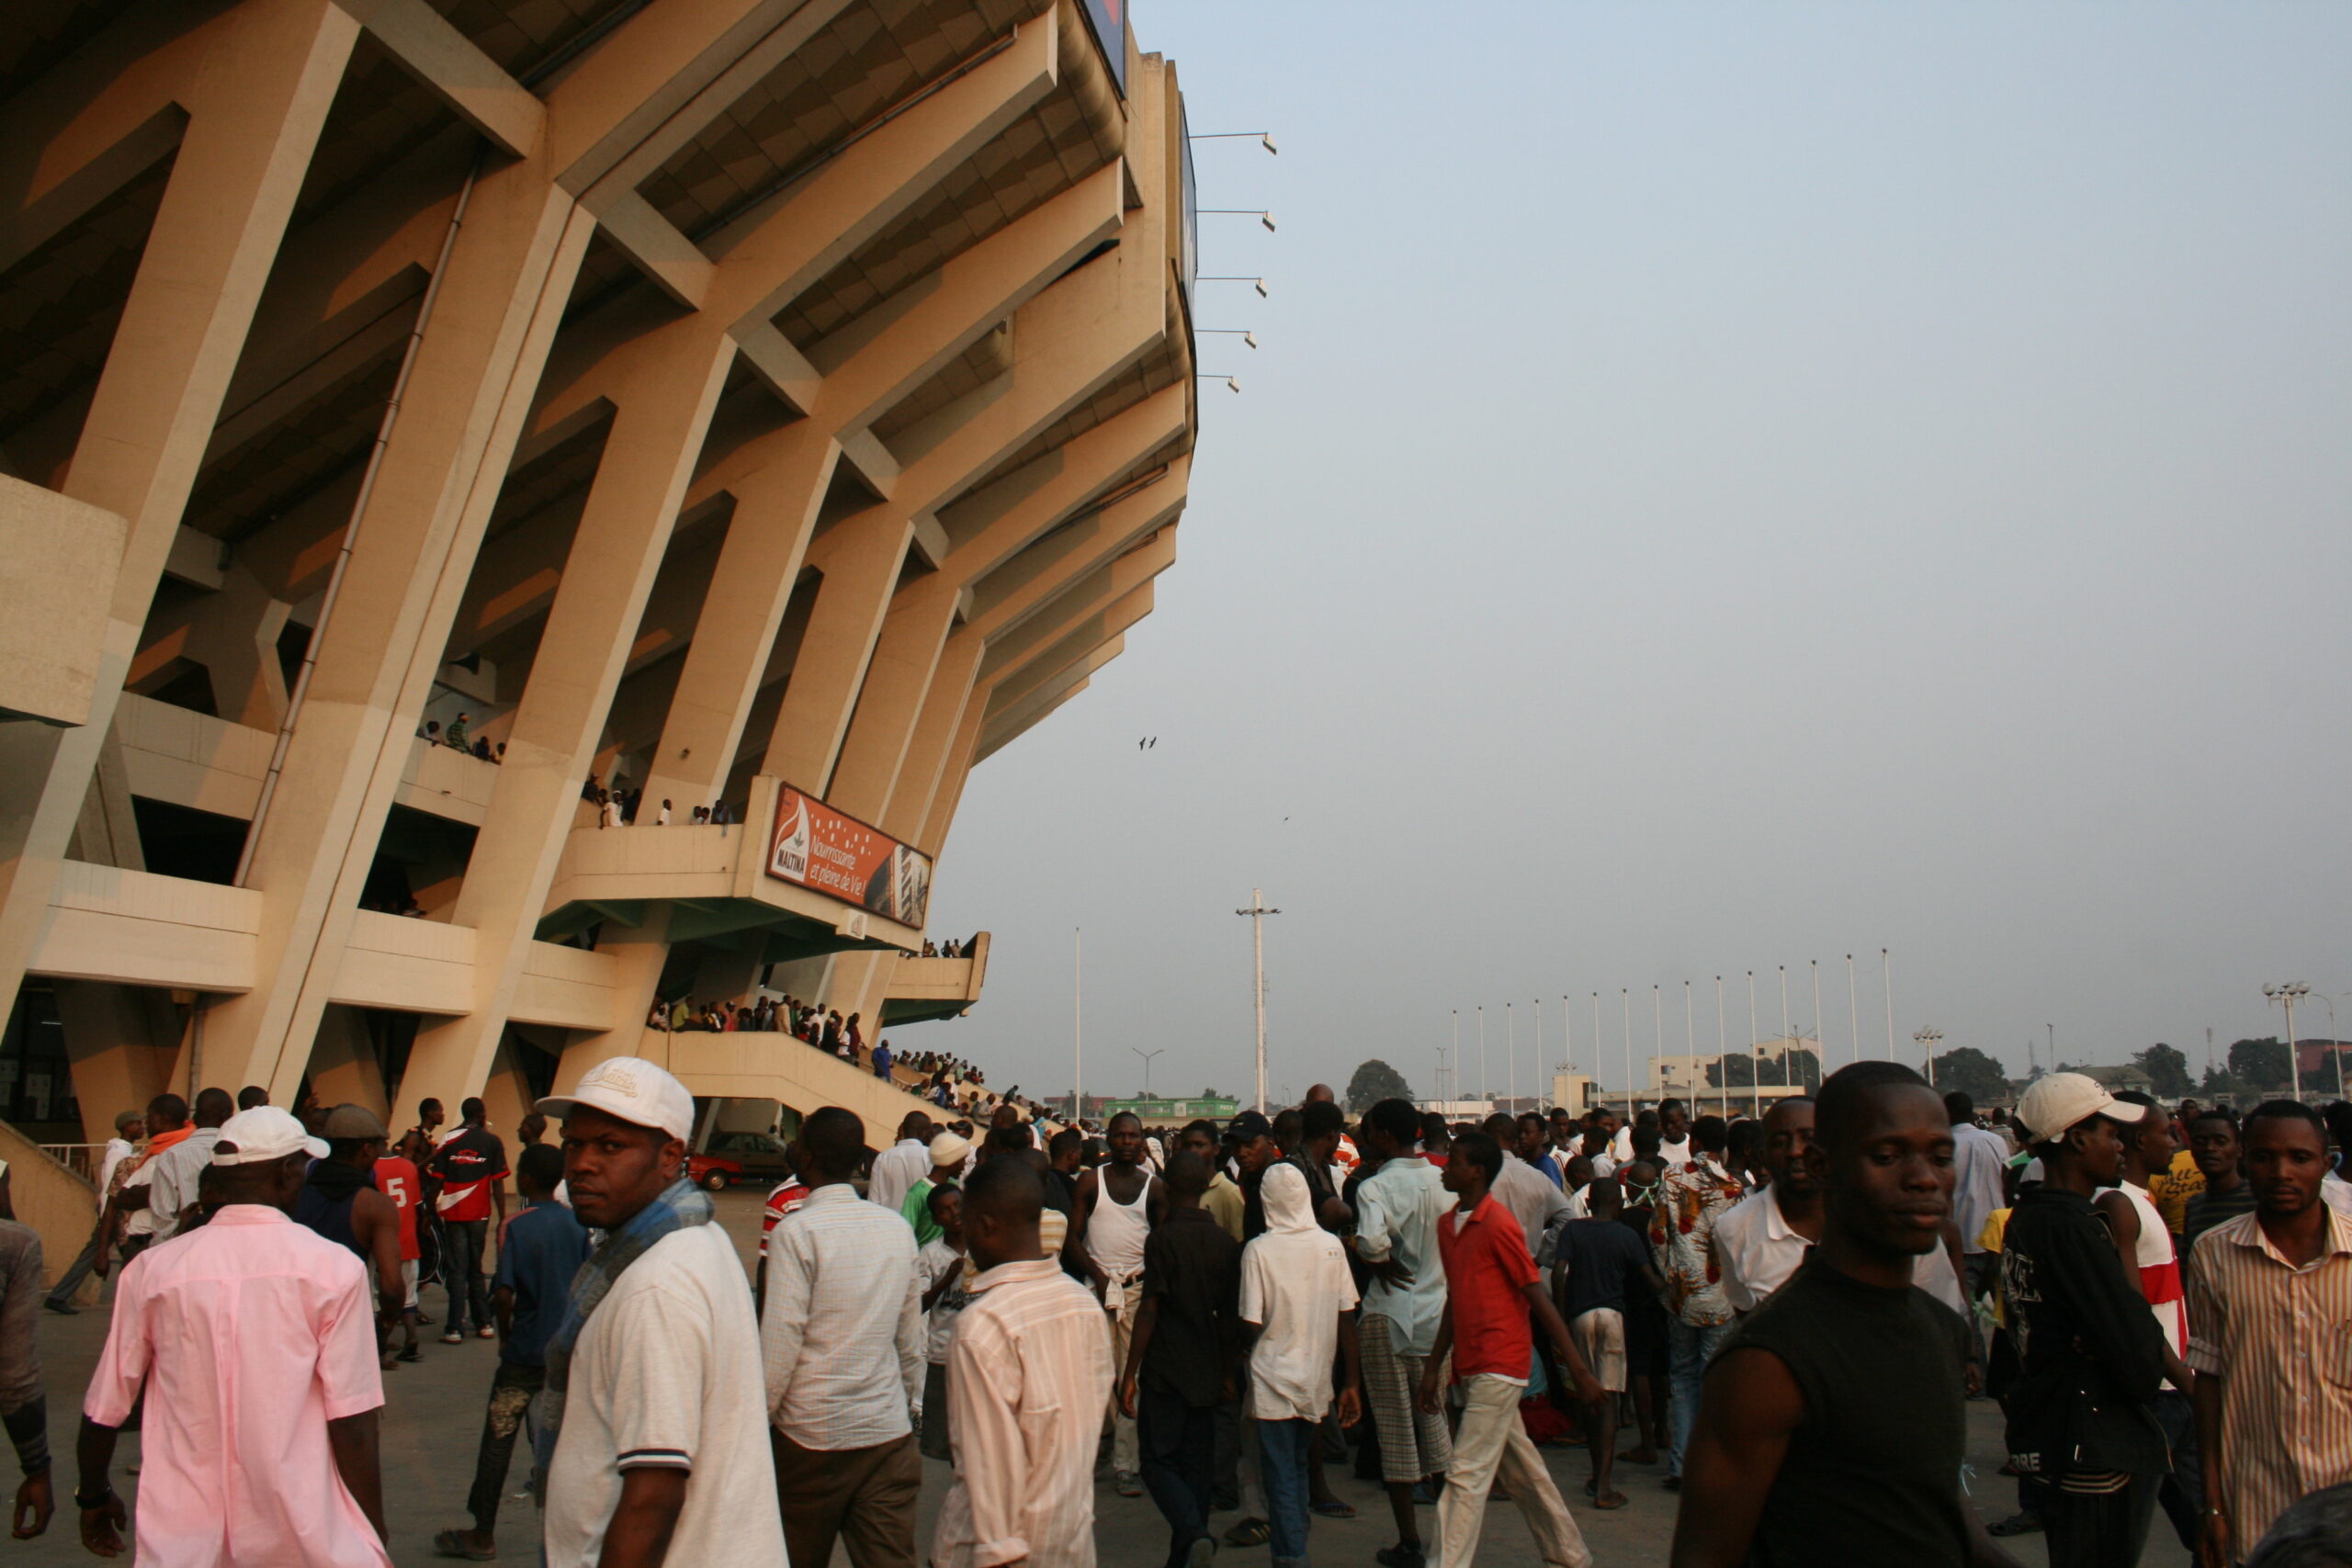 Outside Kinshasa soccer stadium